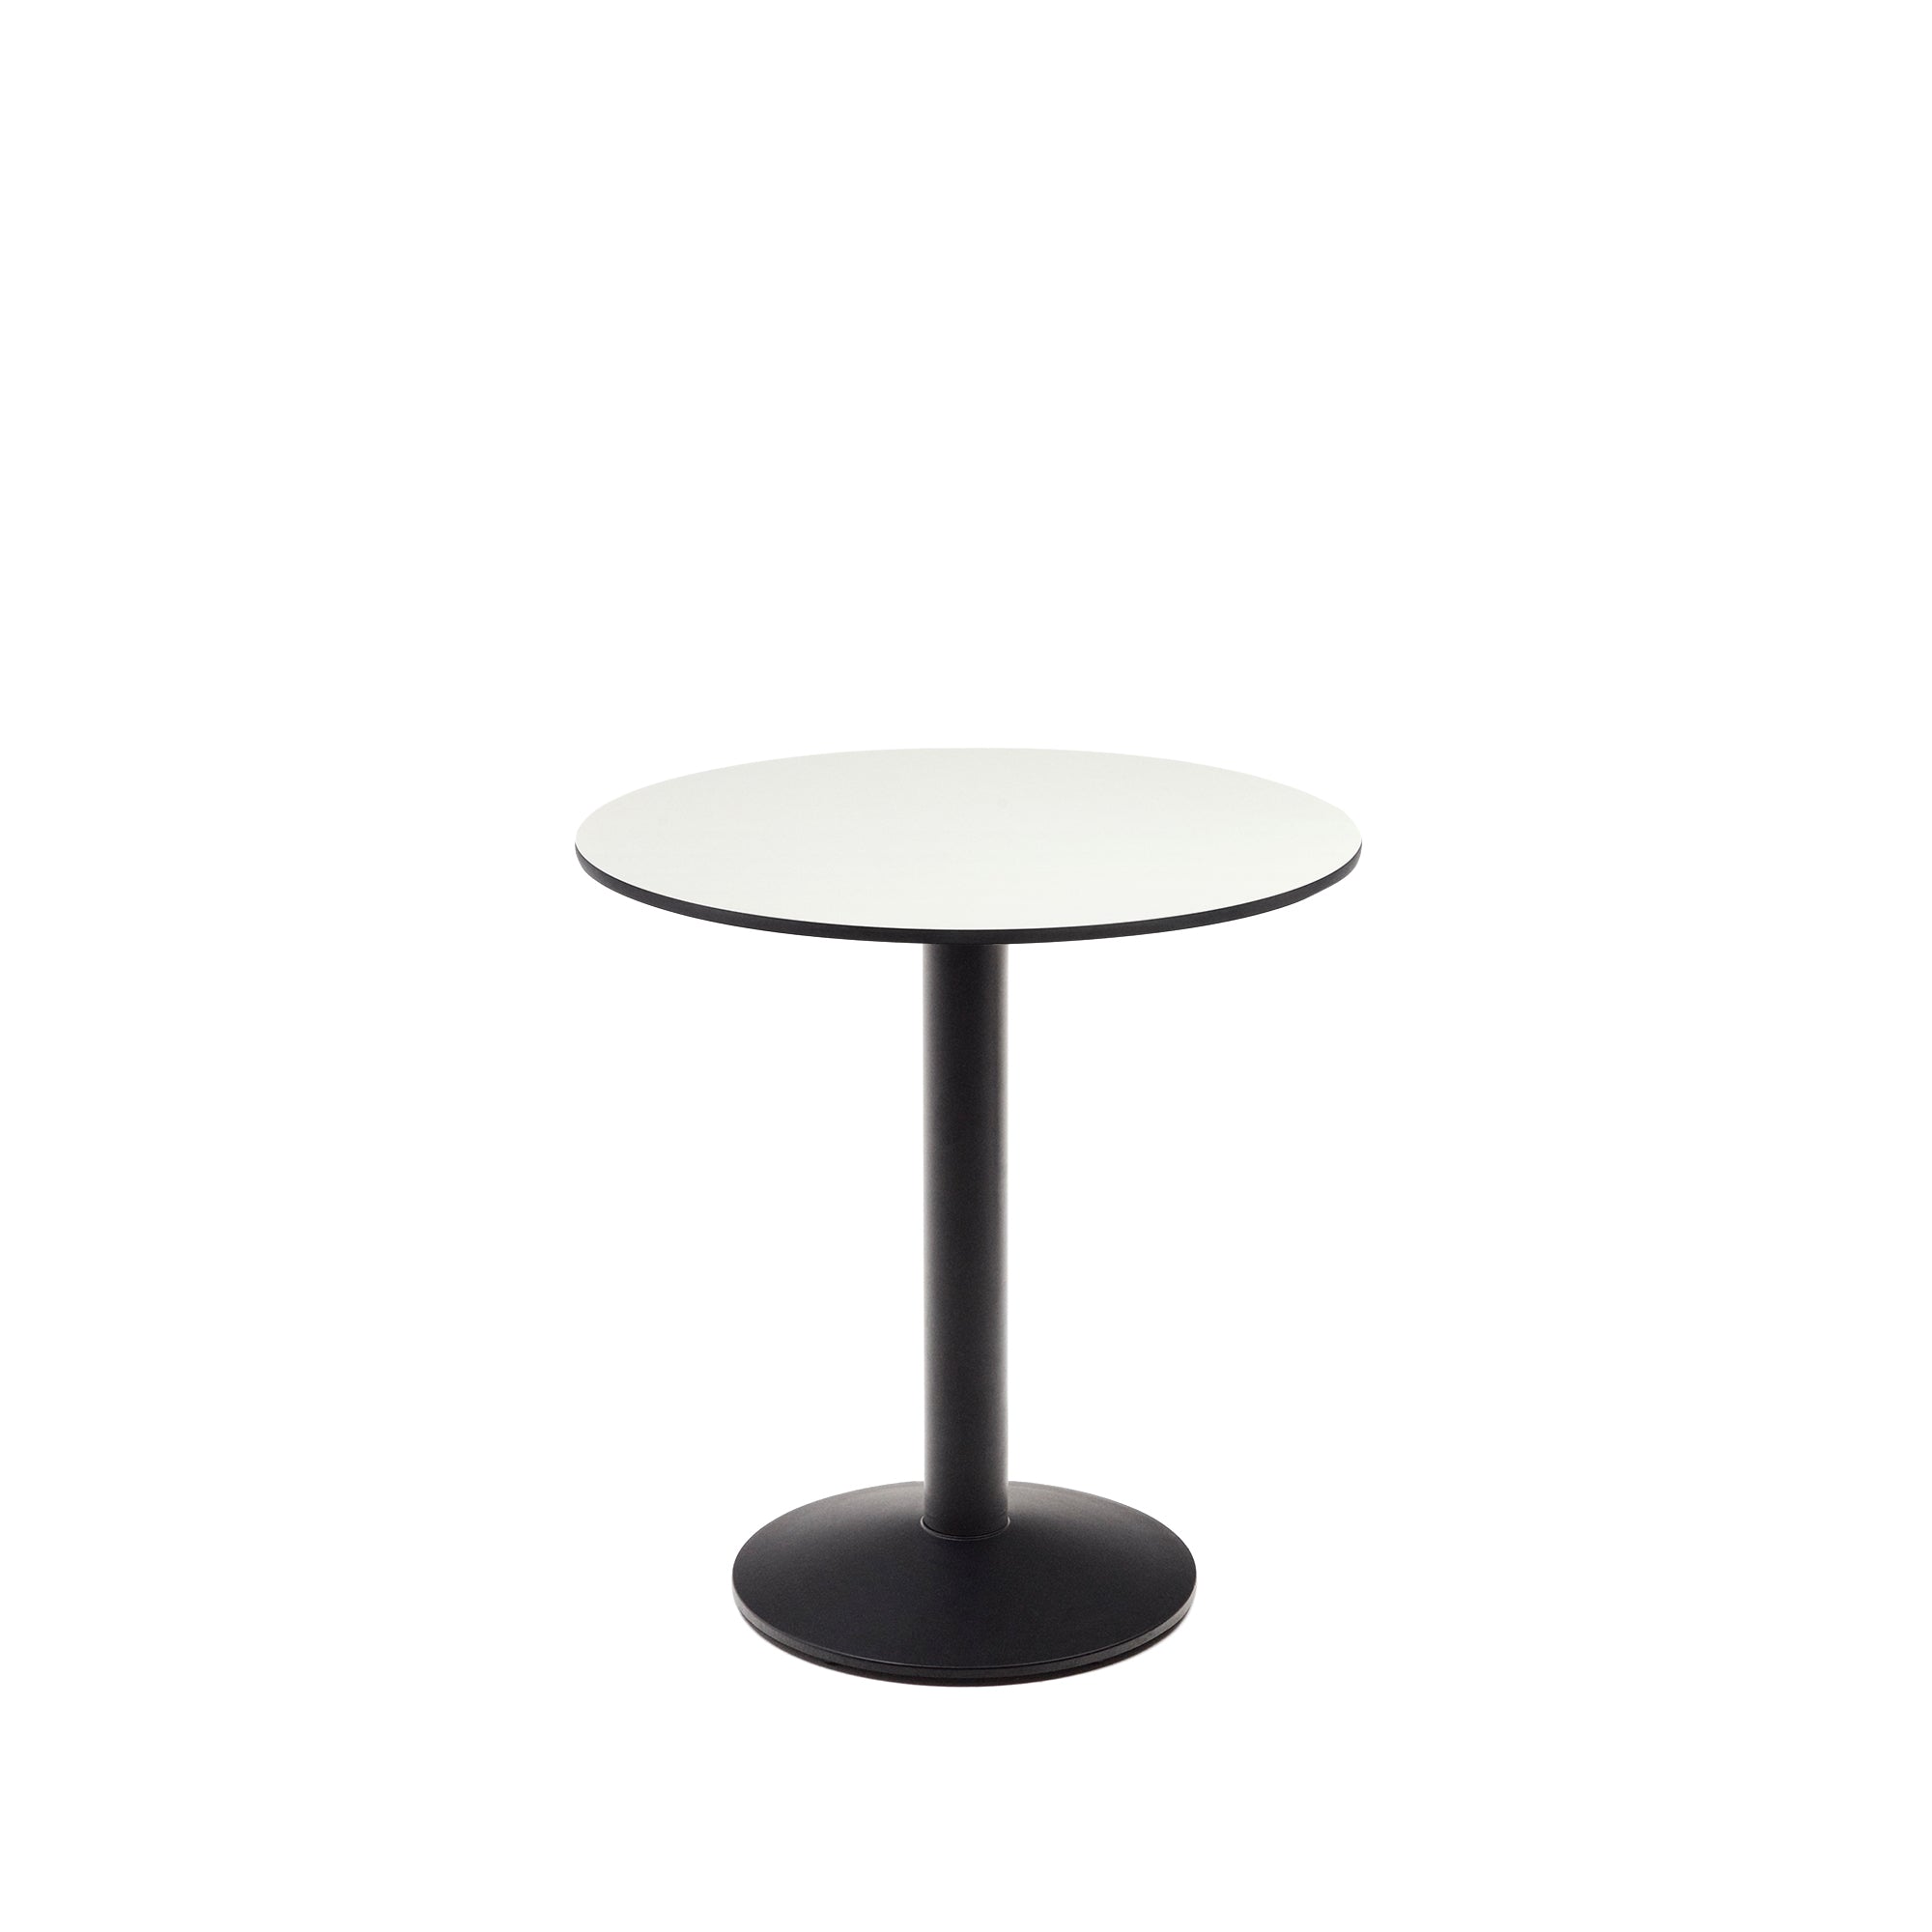 Esilda kerek kültéri asztal fehér színben, fekete színű fémlábbal, Ø 70 x 70 cm, festett fekete színben.